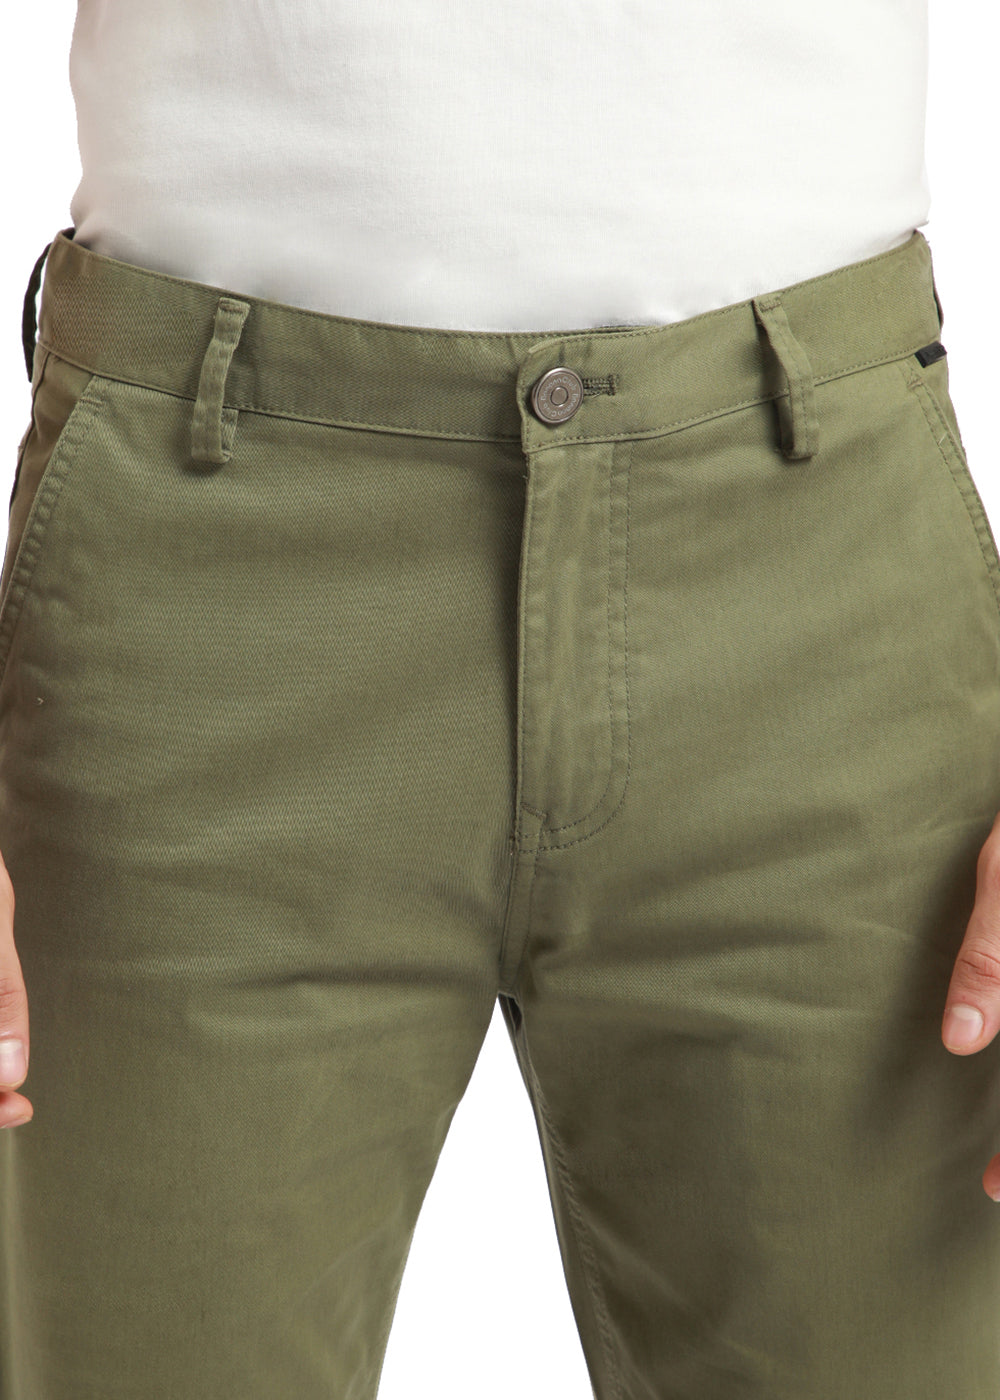 Olive Green Carpenter Pants